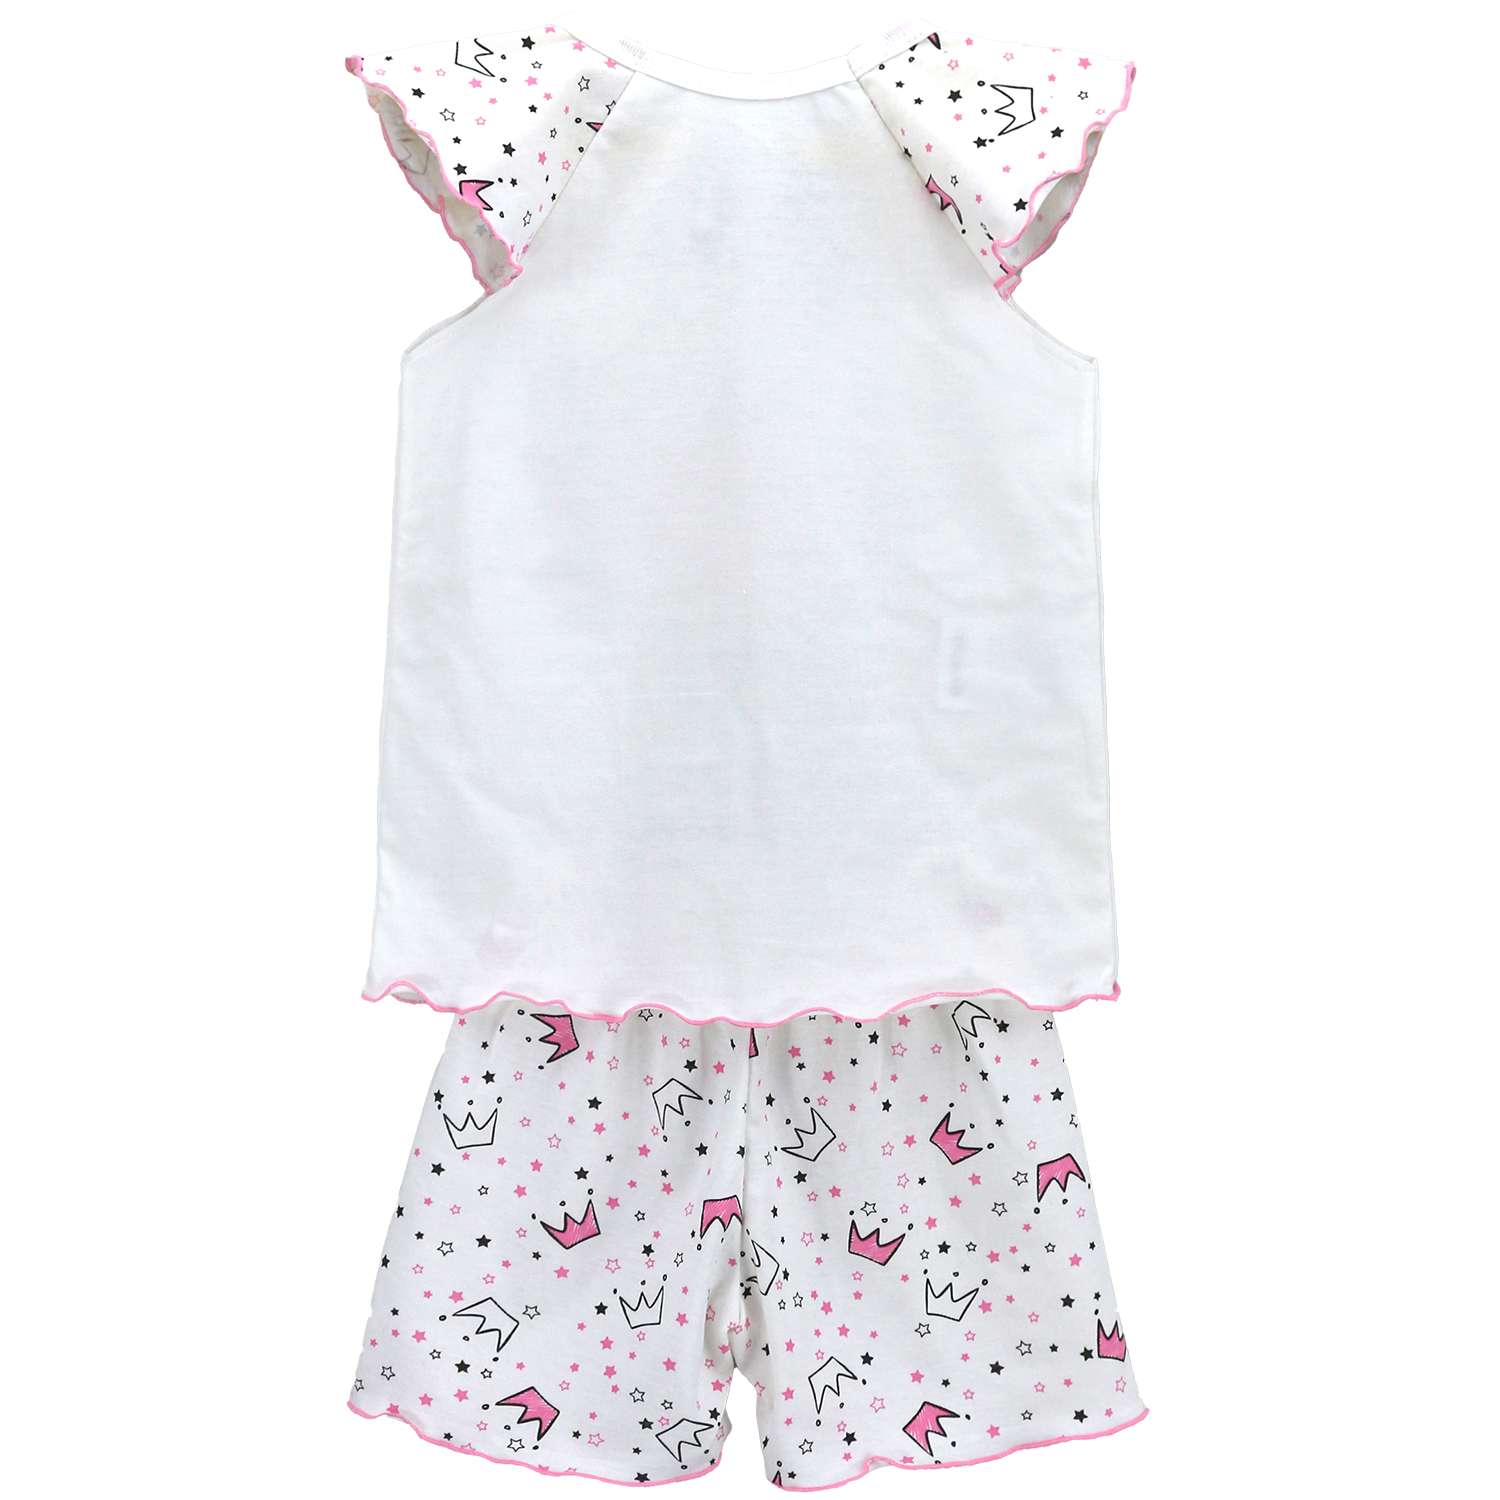 Пижама Babycollection 00-00028359 молочный,розовый - фото 2